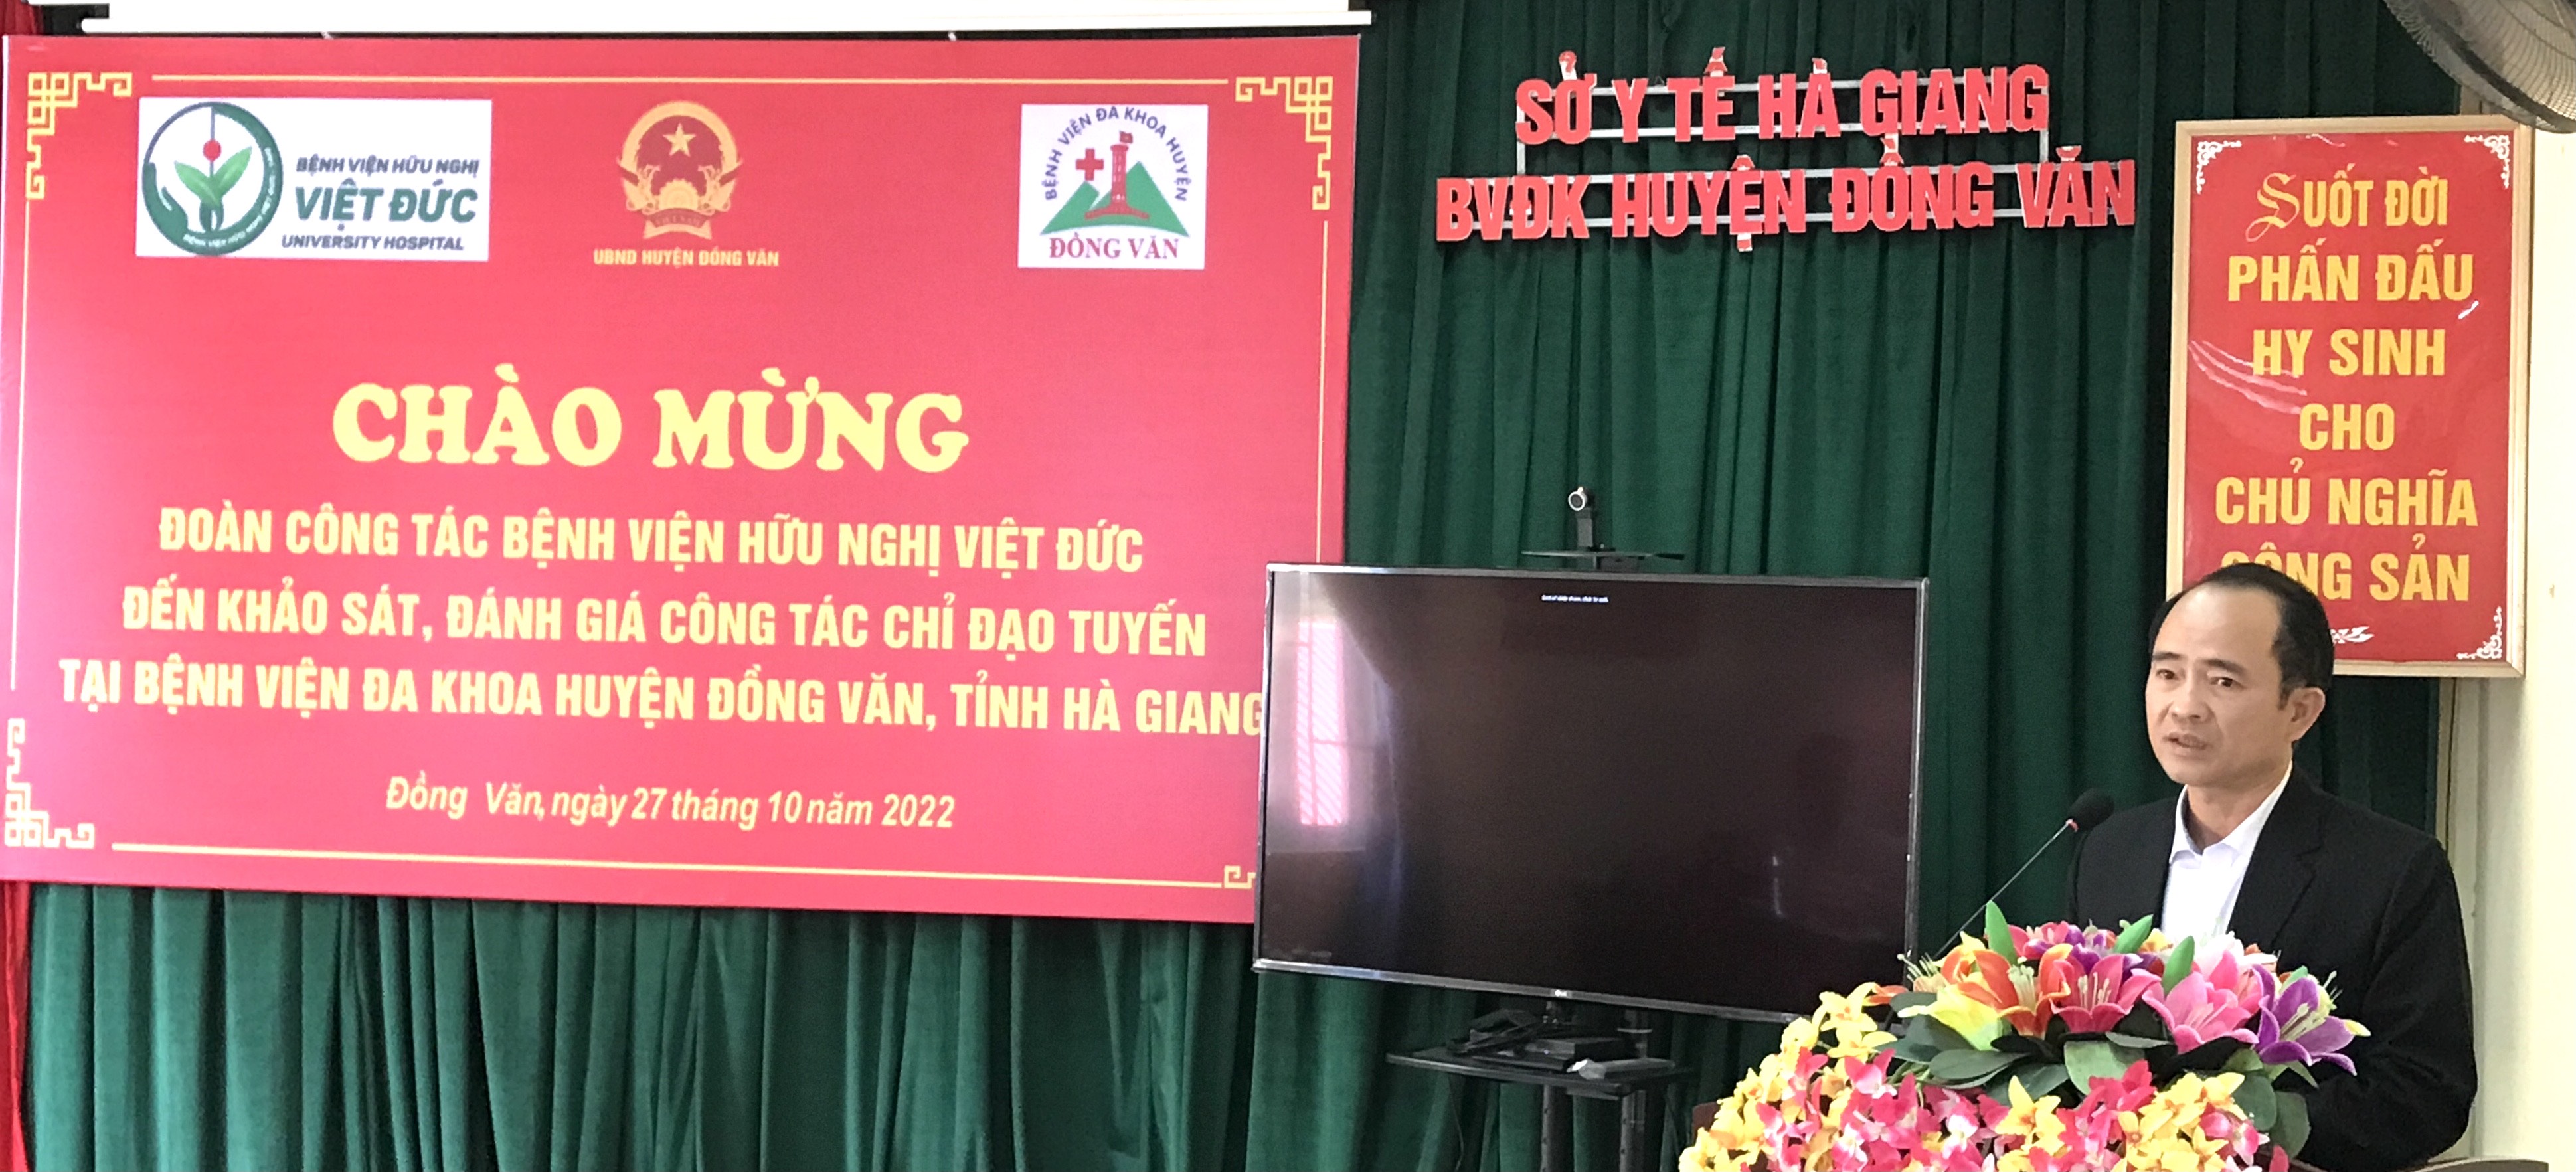 Bệnh viện Hữu nghị Việt Đức làm việc tại Đồng Văn